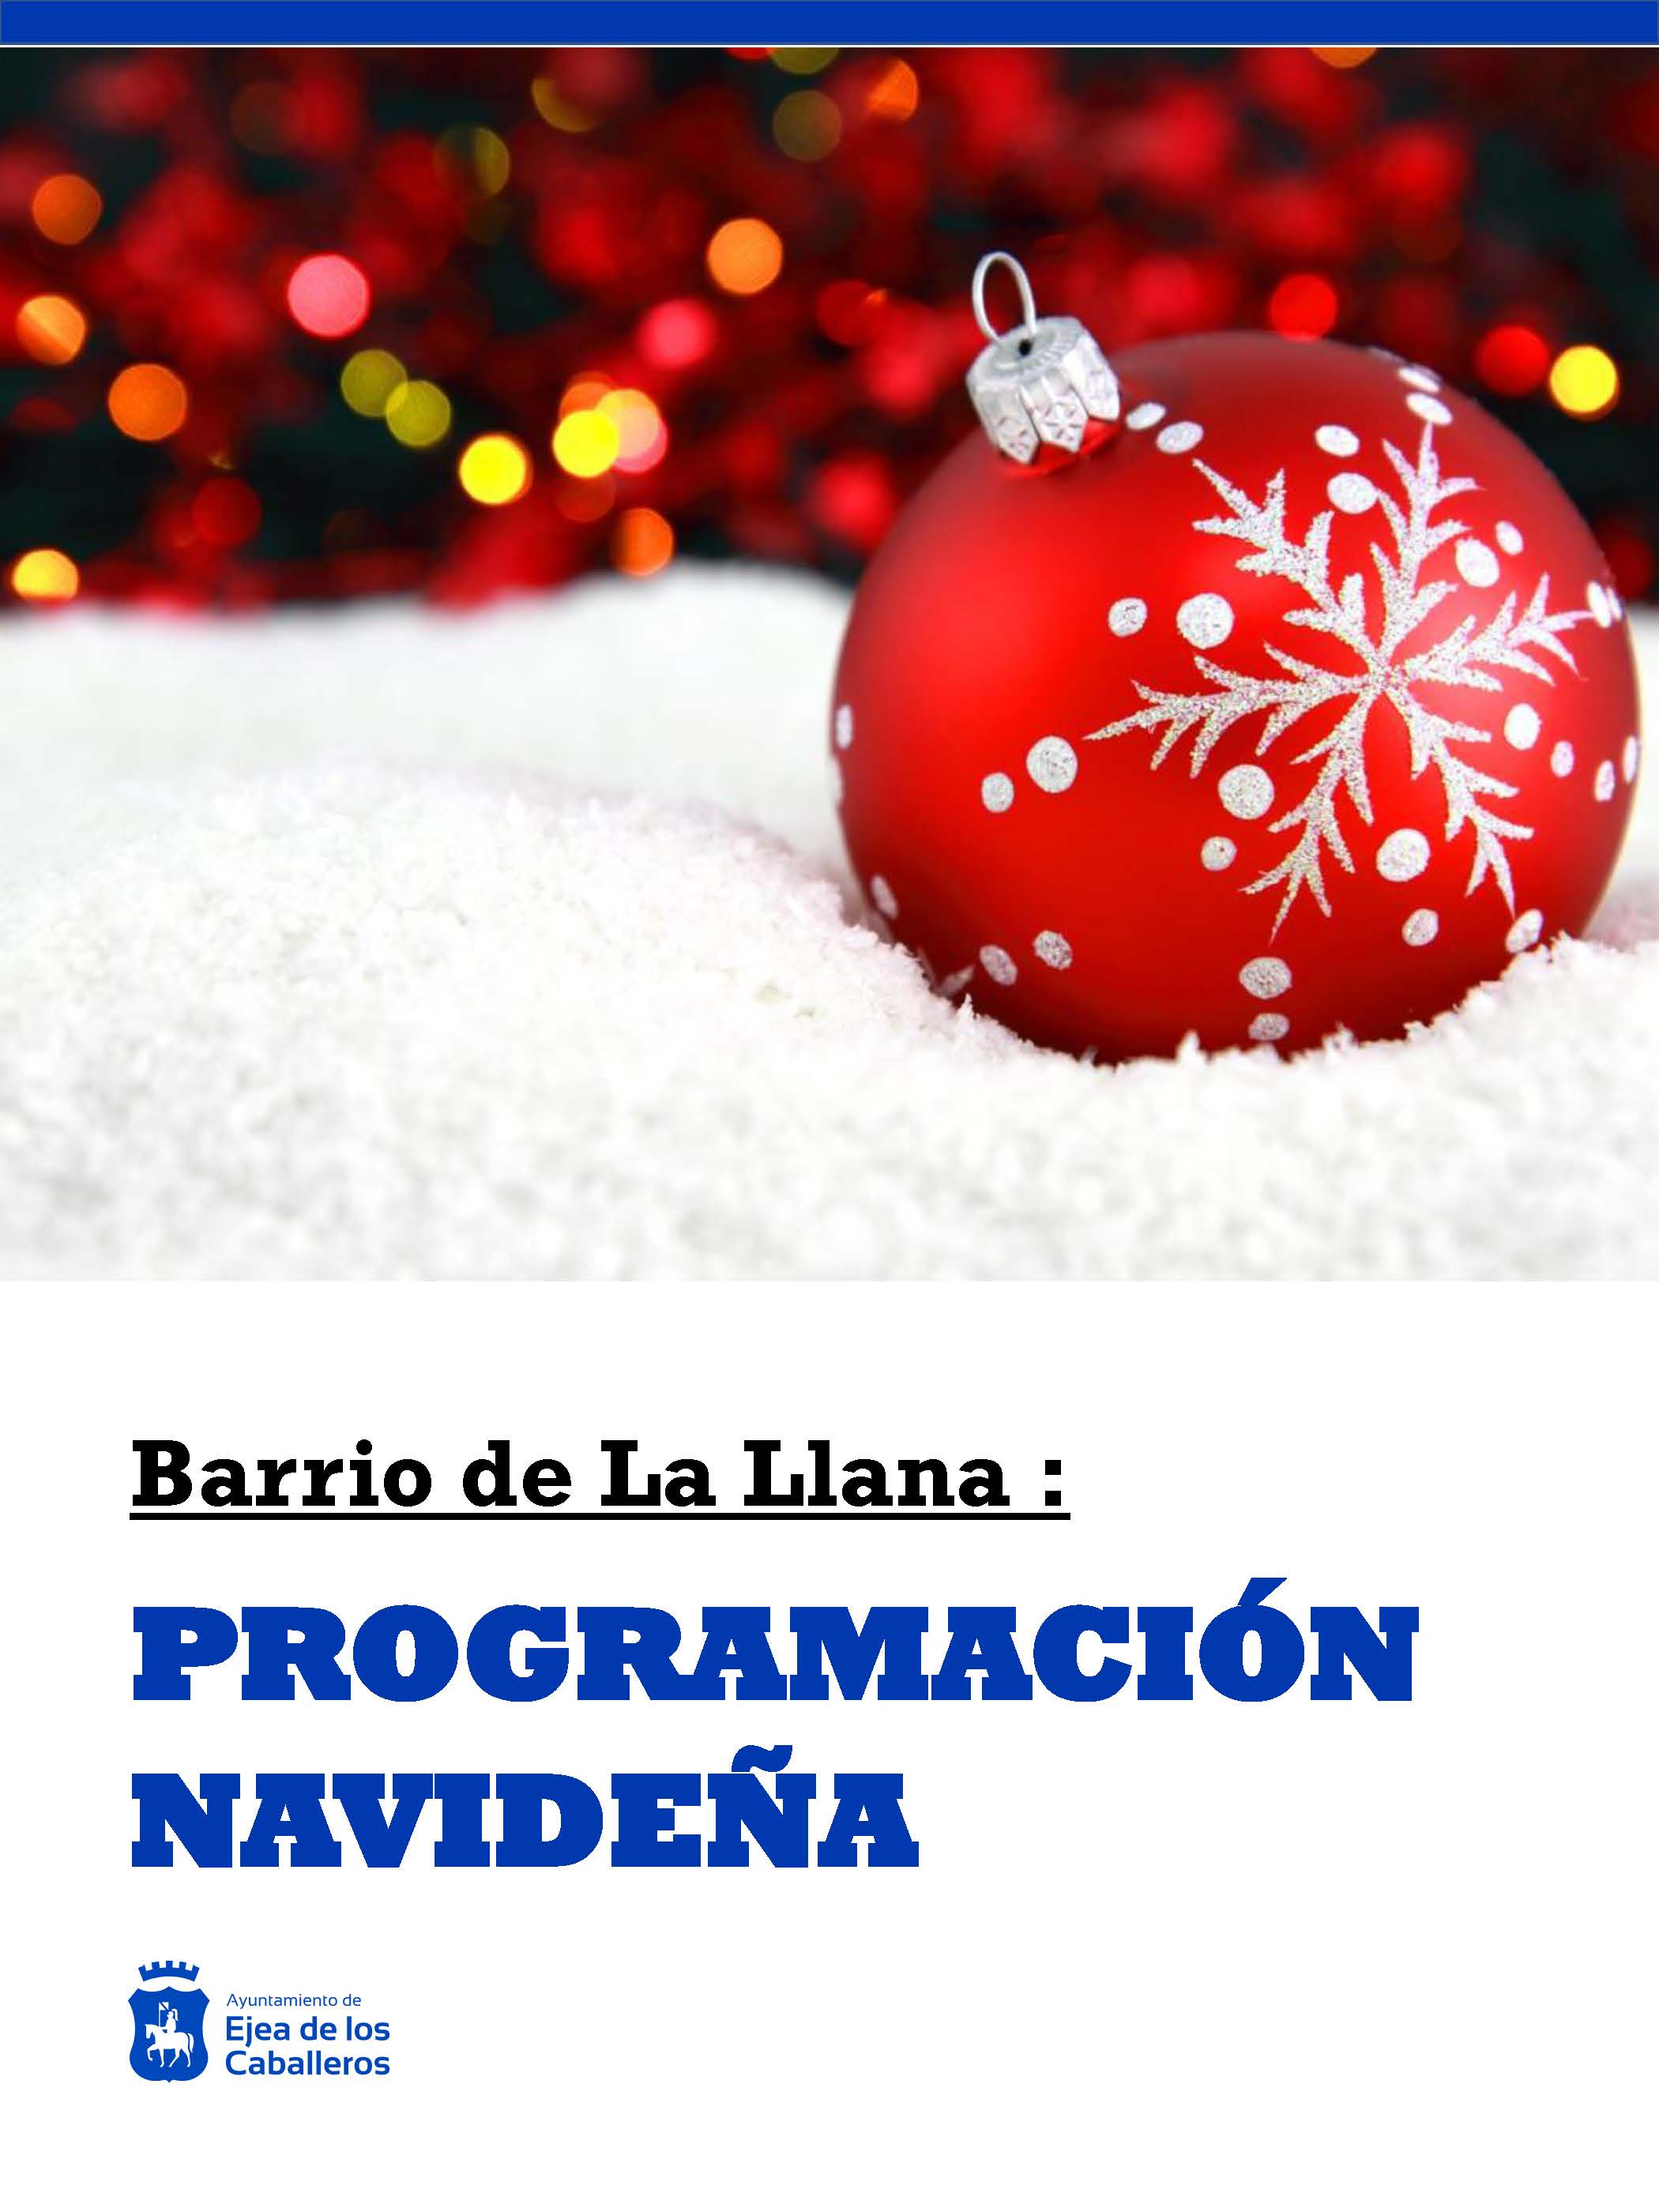 En este momento estás viendo Programación navideña en el Barrio de La Llana